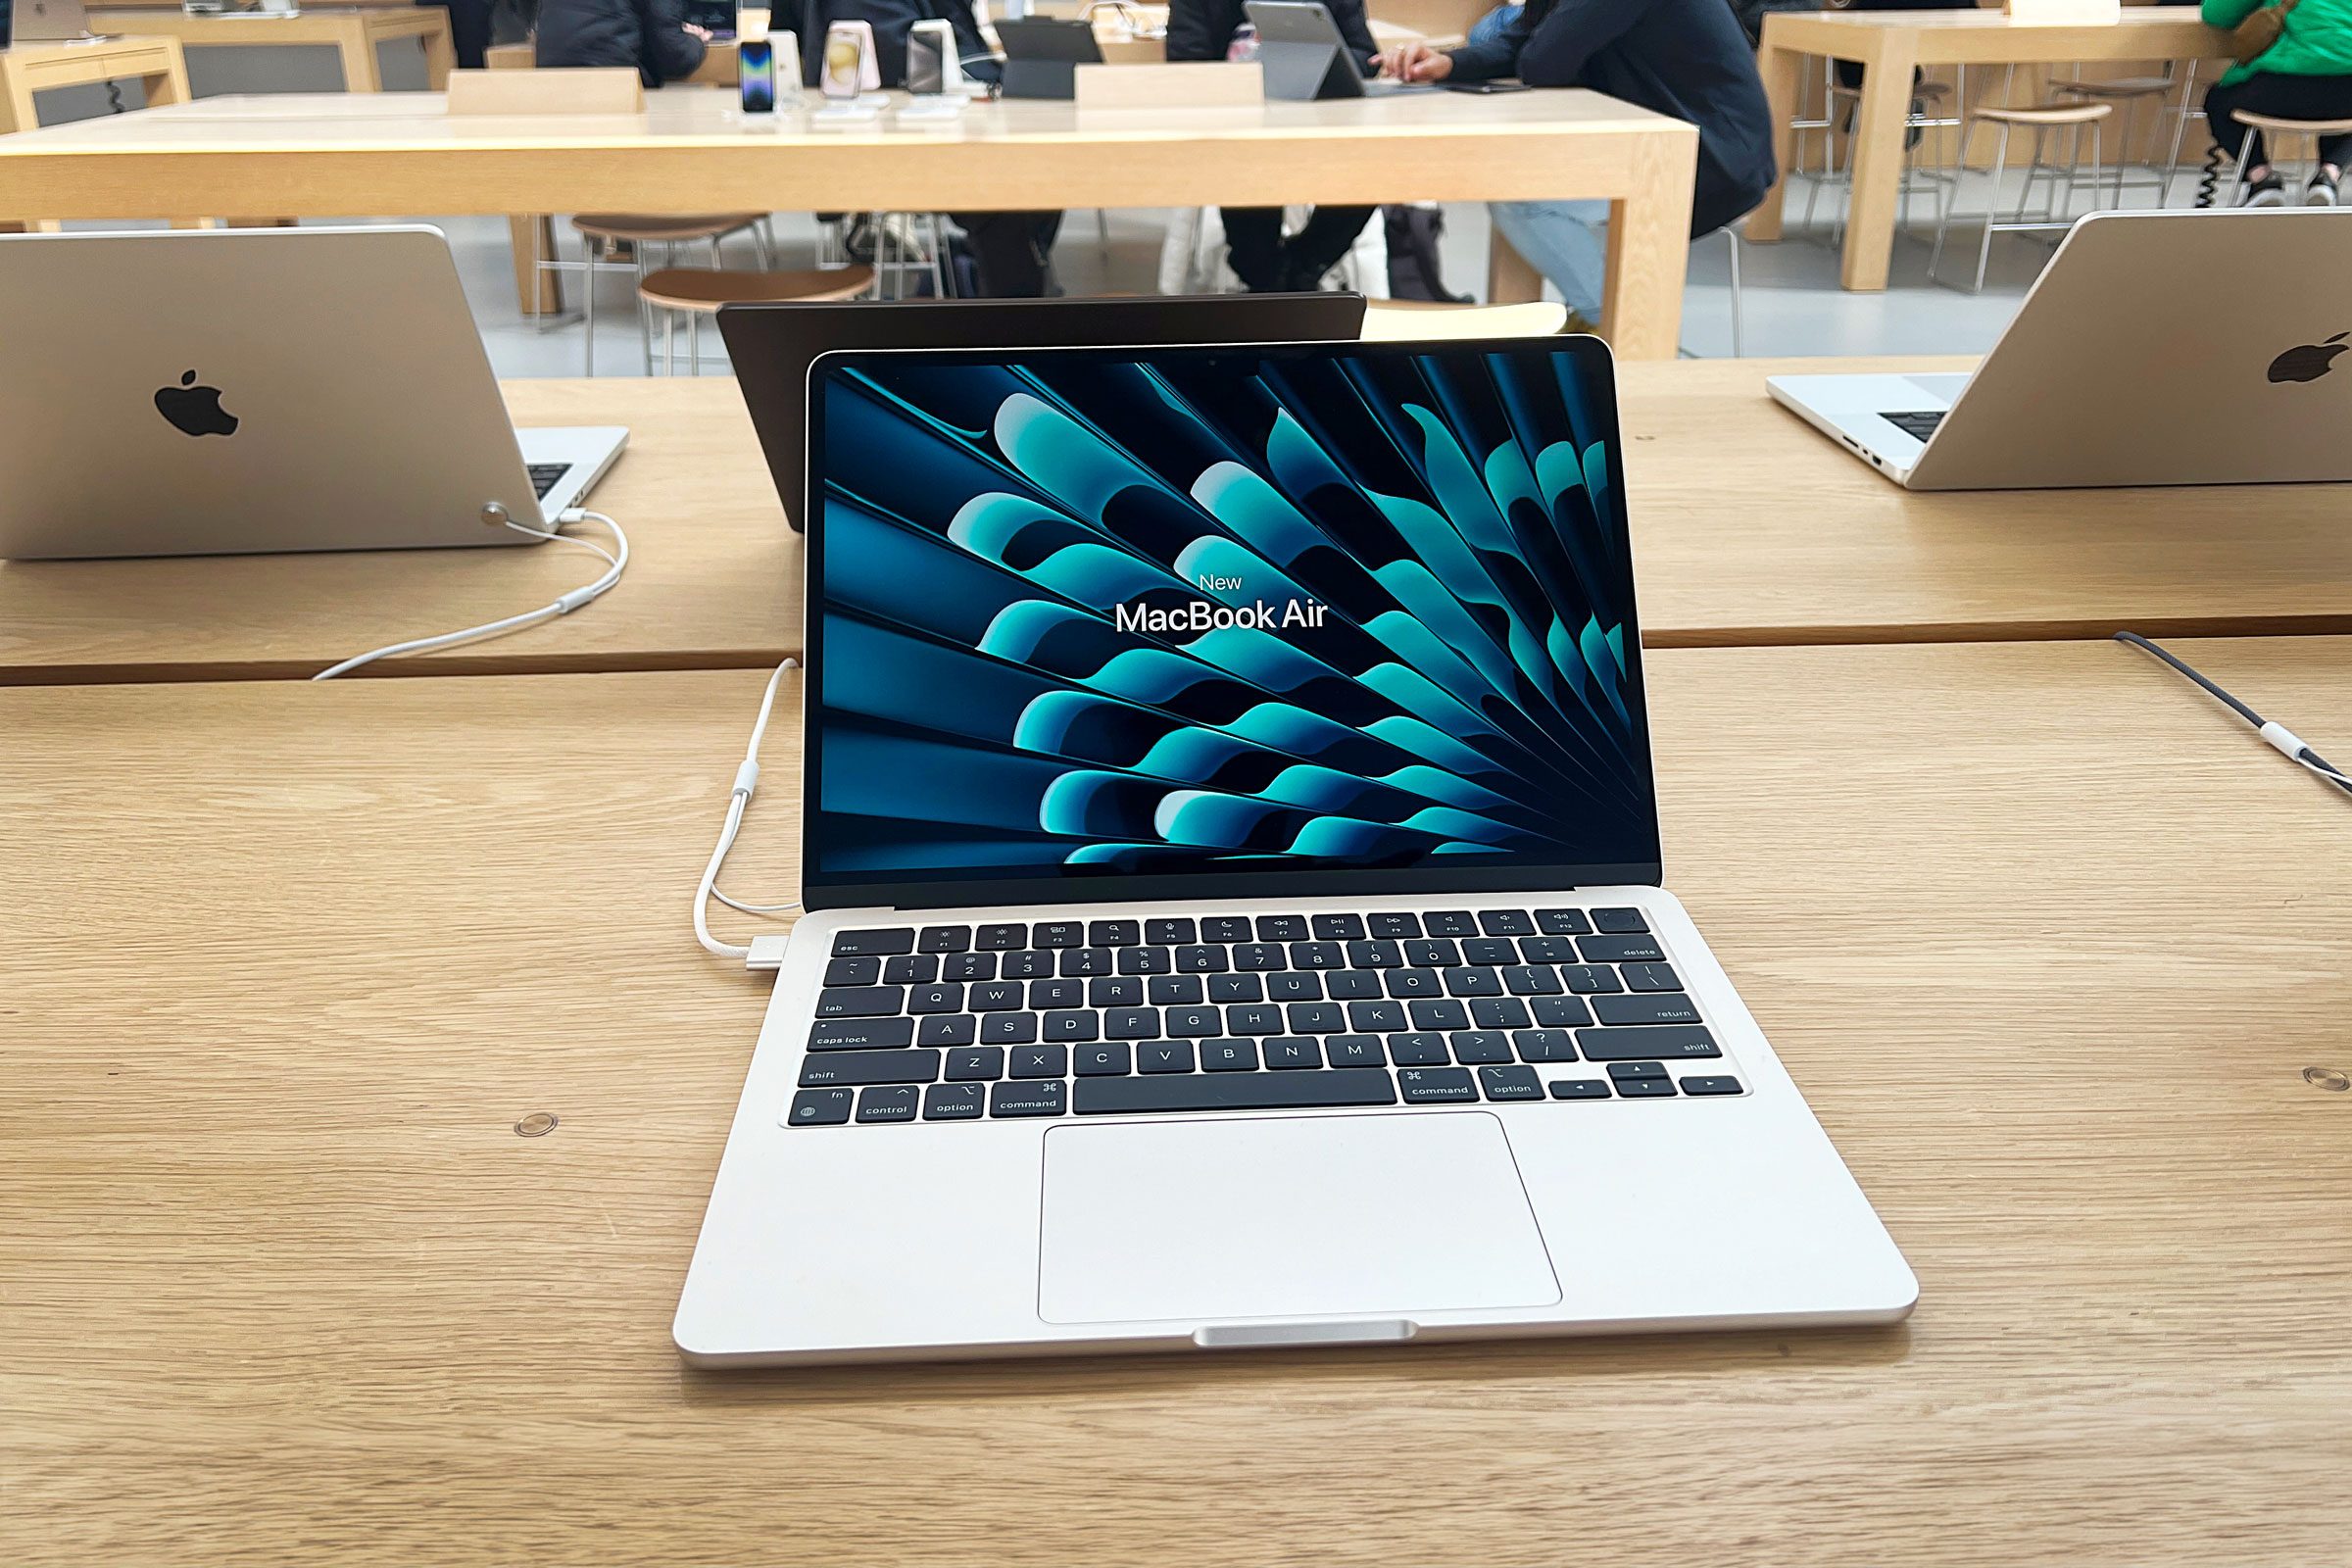 macbook air at apple store